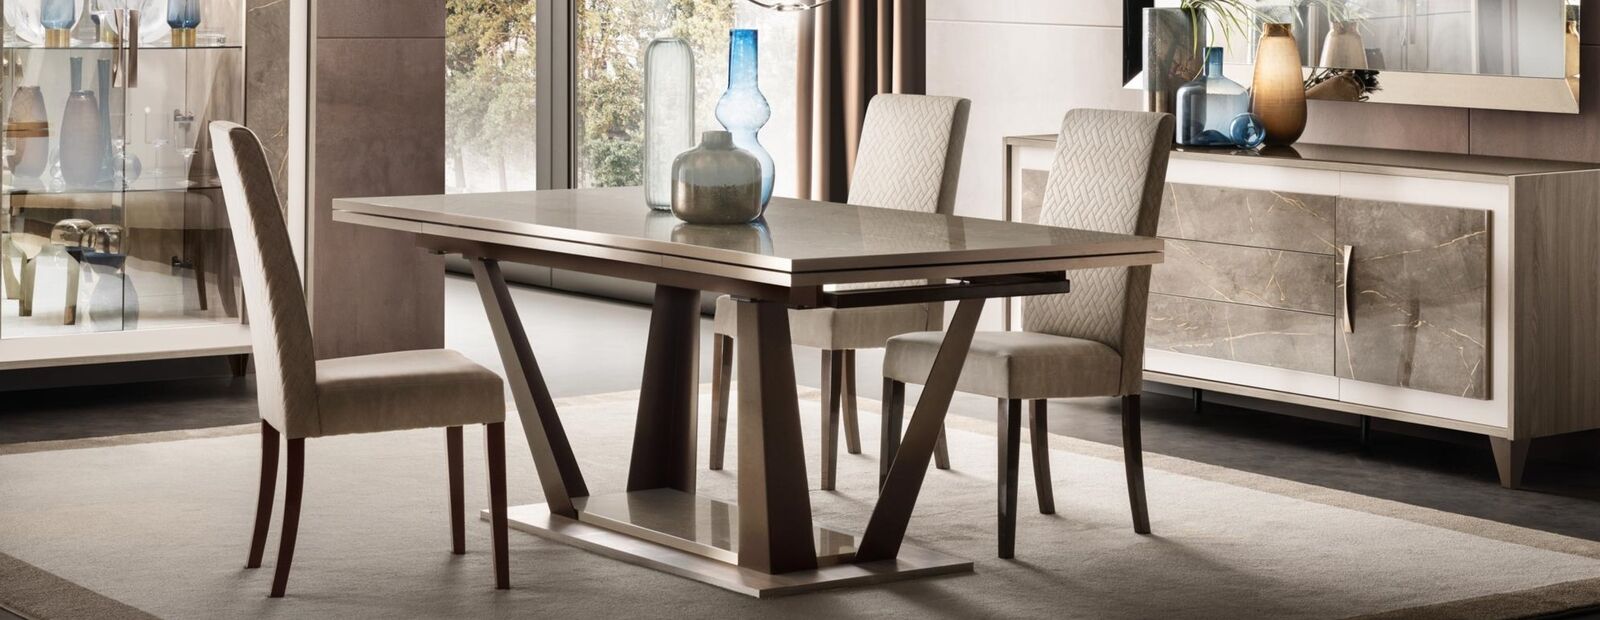 Luxus Möbel Esstisch Tisch Esszimmer Wohnzimmer Holz Edelstahl Design Tische Neu